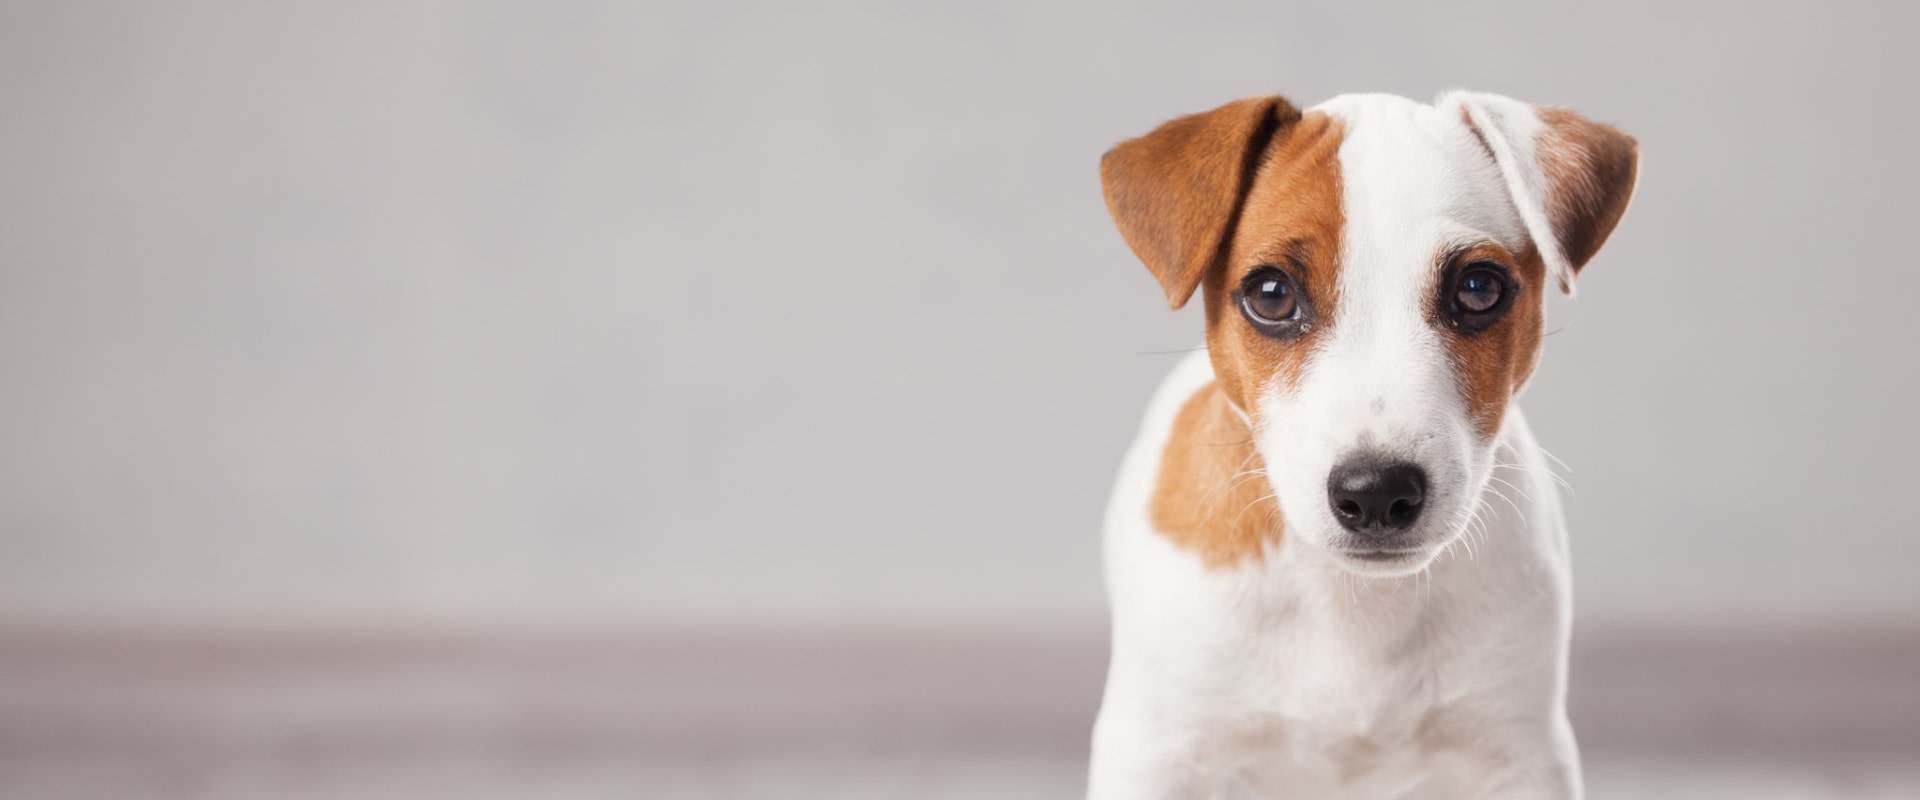 Moet de voerbak van een hond worden verhoogd?